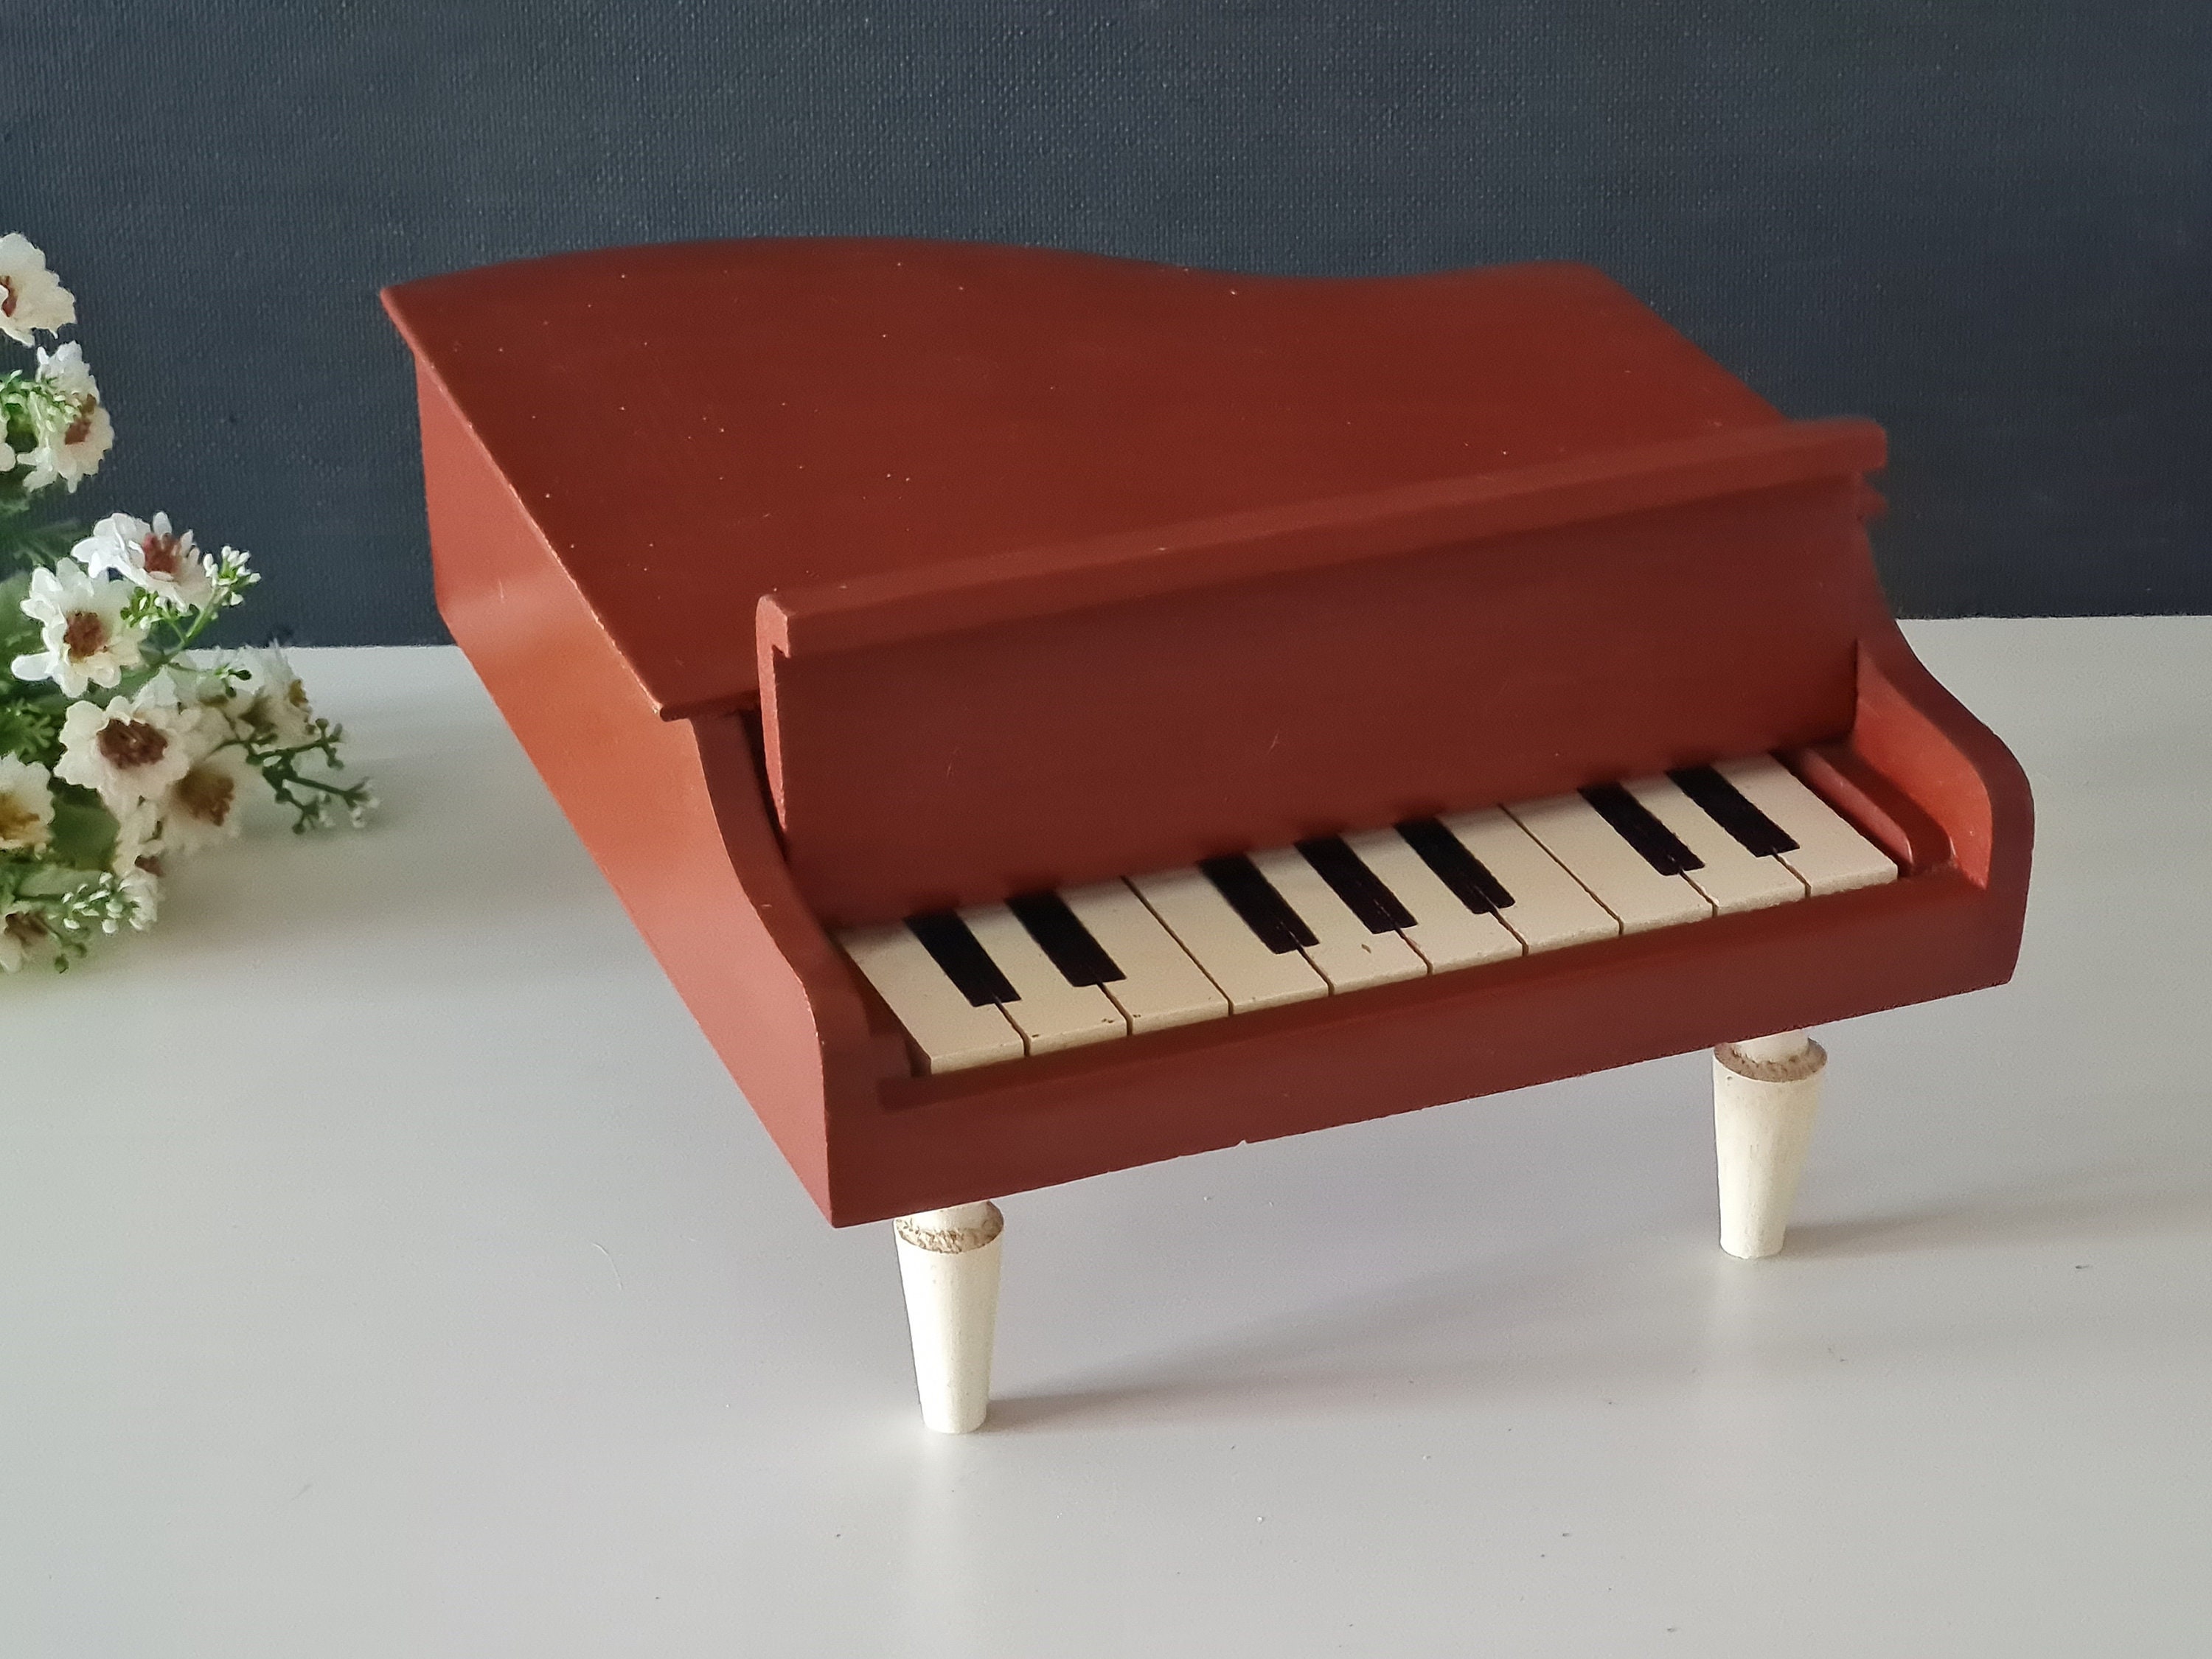 antiguo piano infantil de 12 teclas dificil - Comprar Videojogos e Consolas  descatalogados no todocoleccion